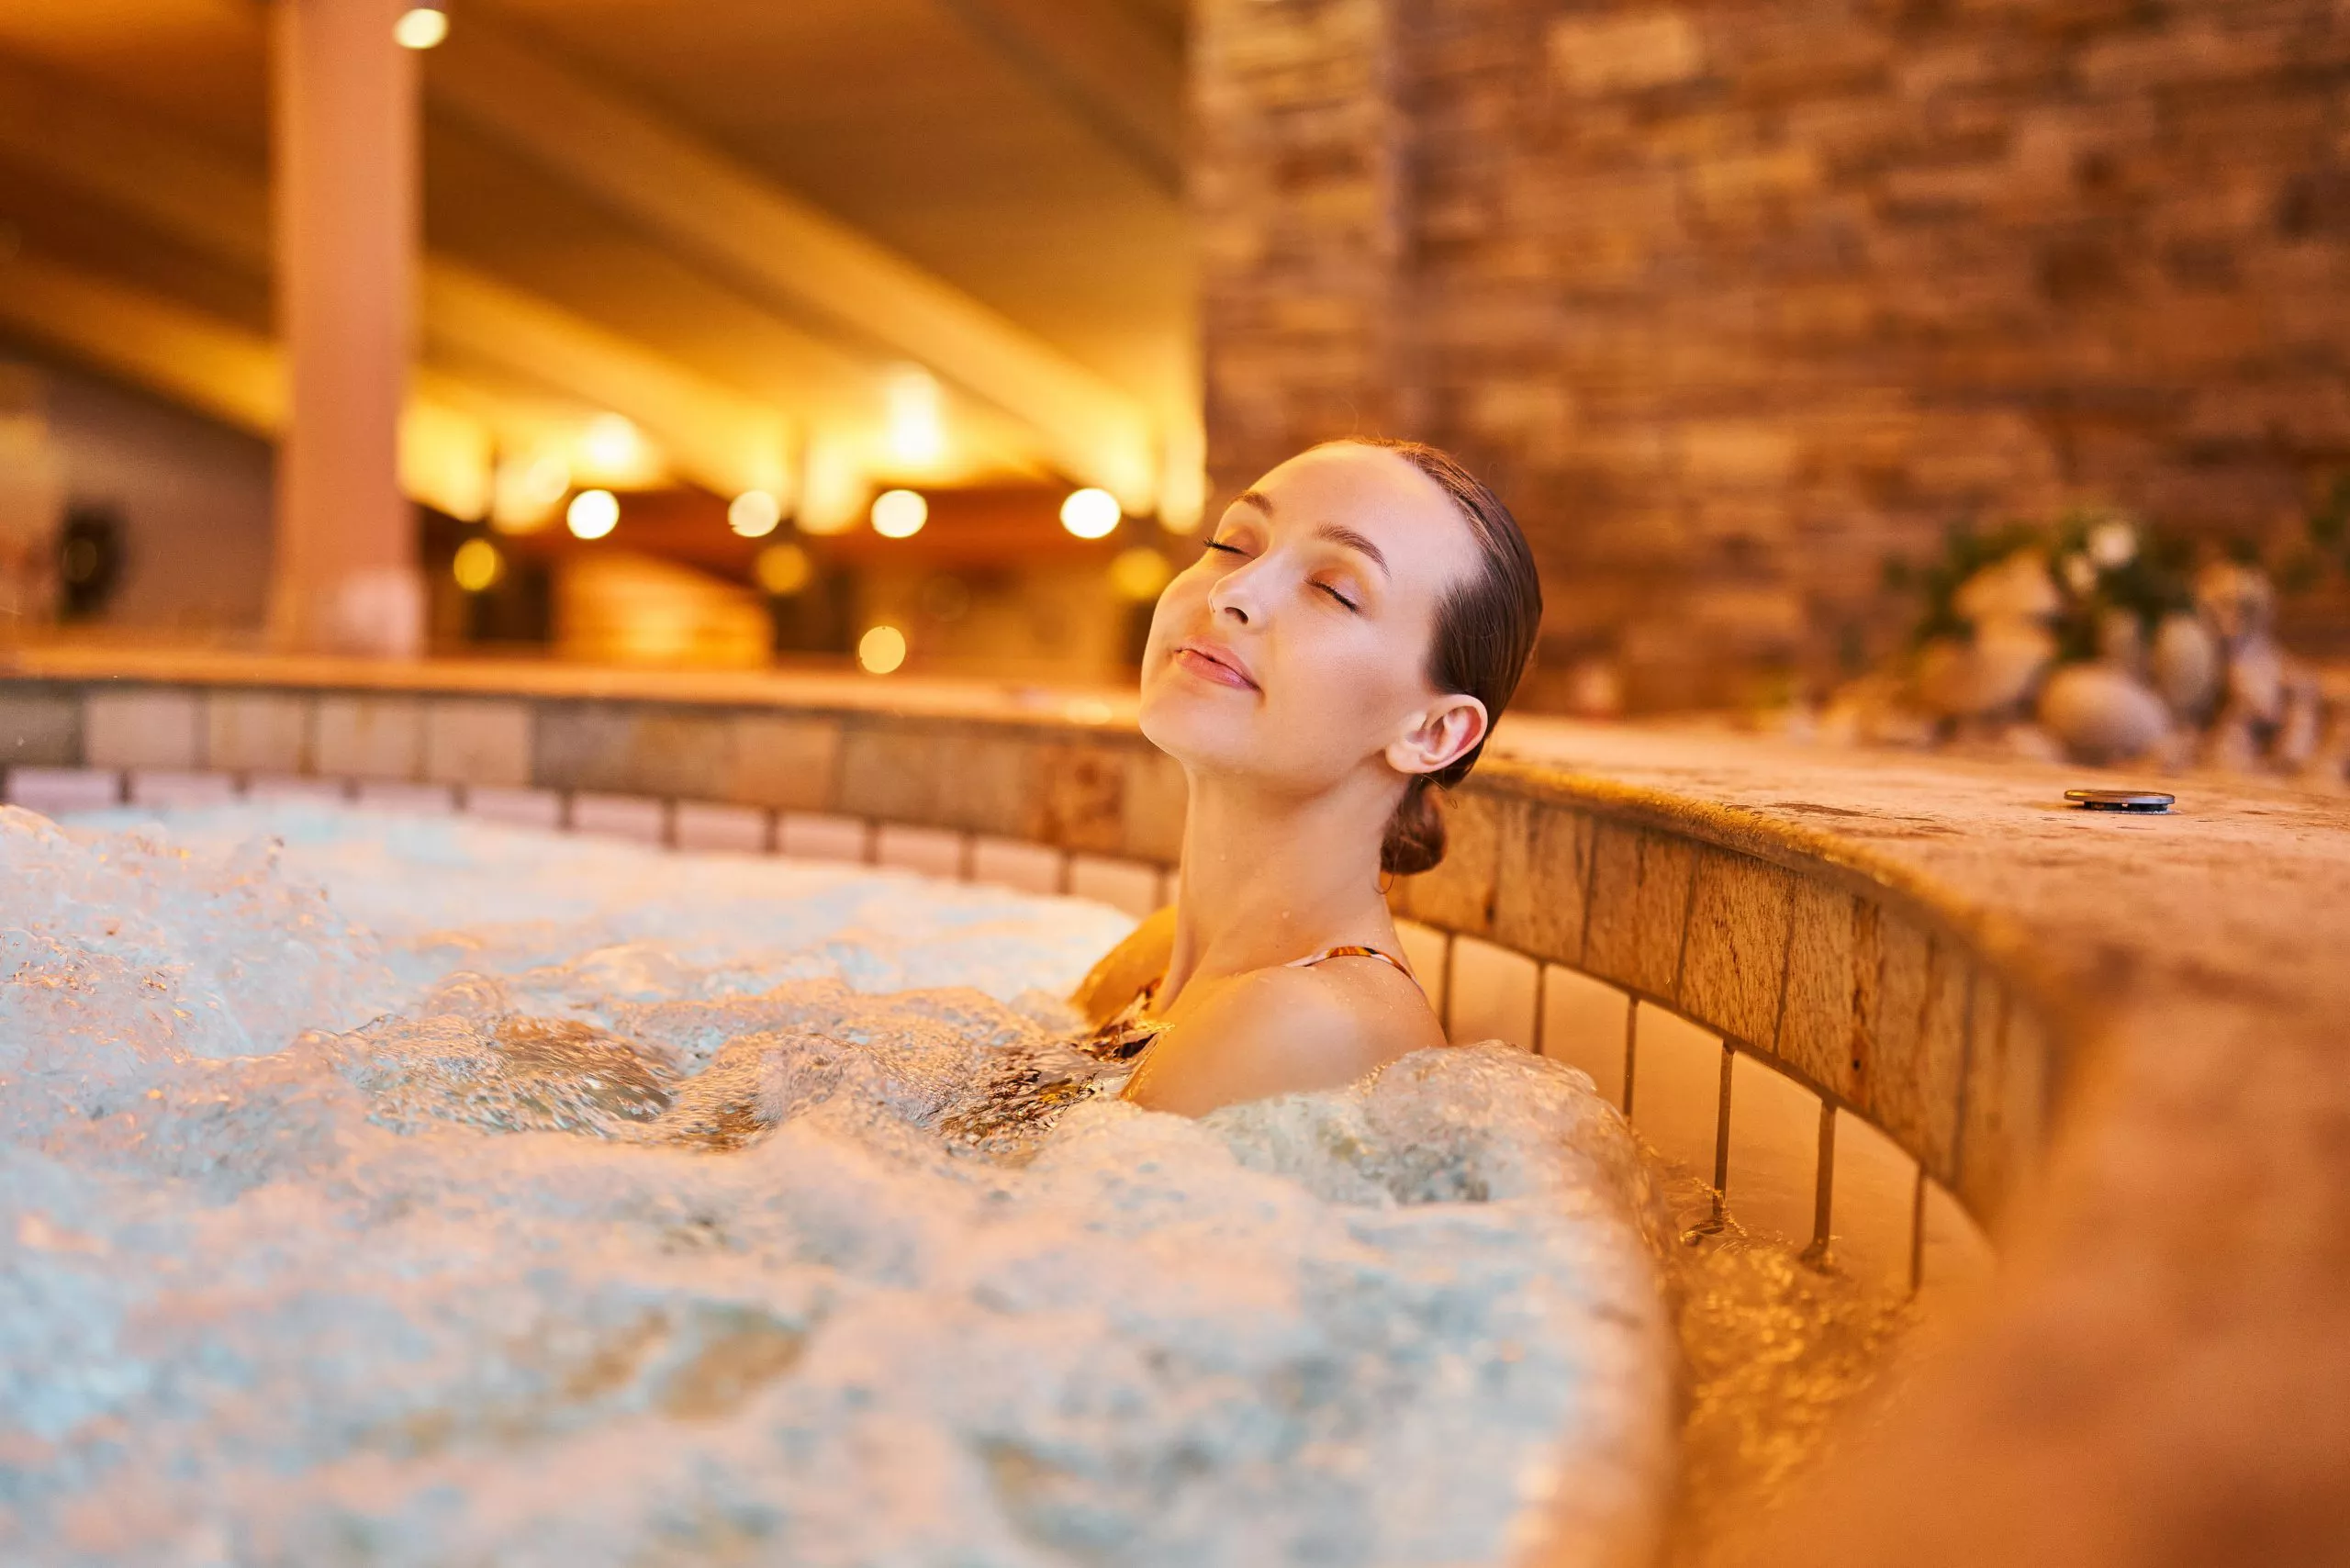 Blick auf eine junge, entspannte Frau mit geschlossenen Augen, die in einem Becken mit sprudelndem Wasser sitzt. In der Ferne sieht man die Beleuchtung und das steinige Innere des Pools: Wände, Decken.